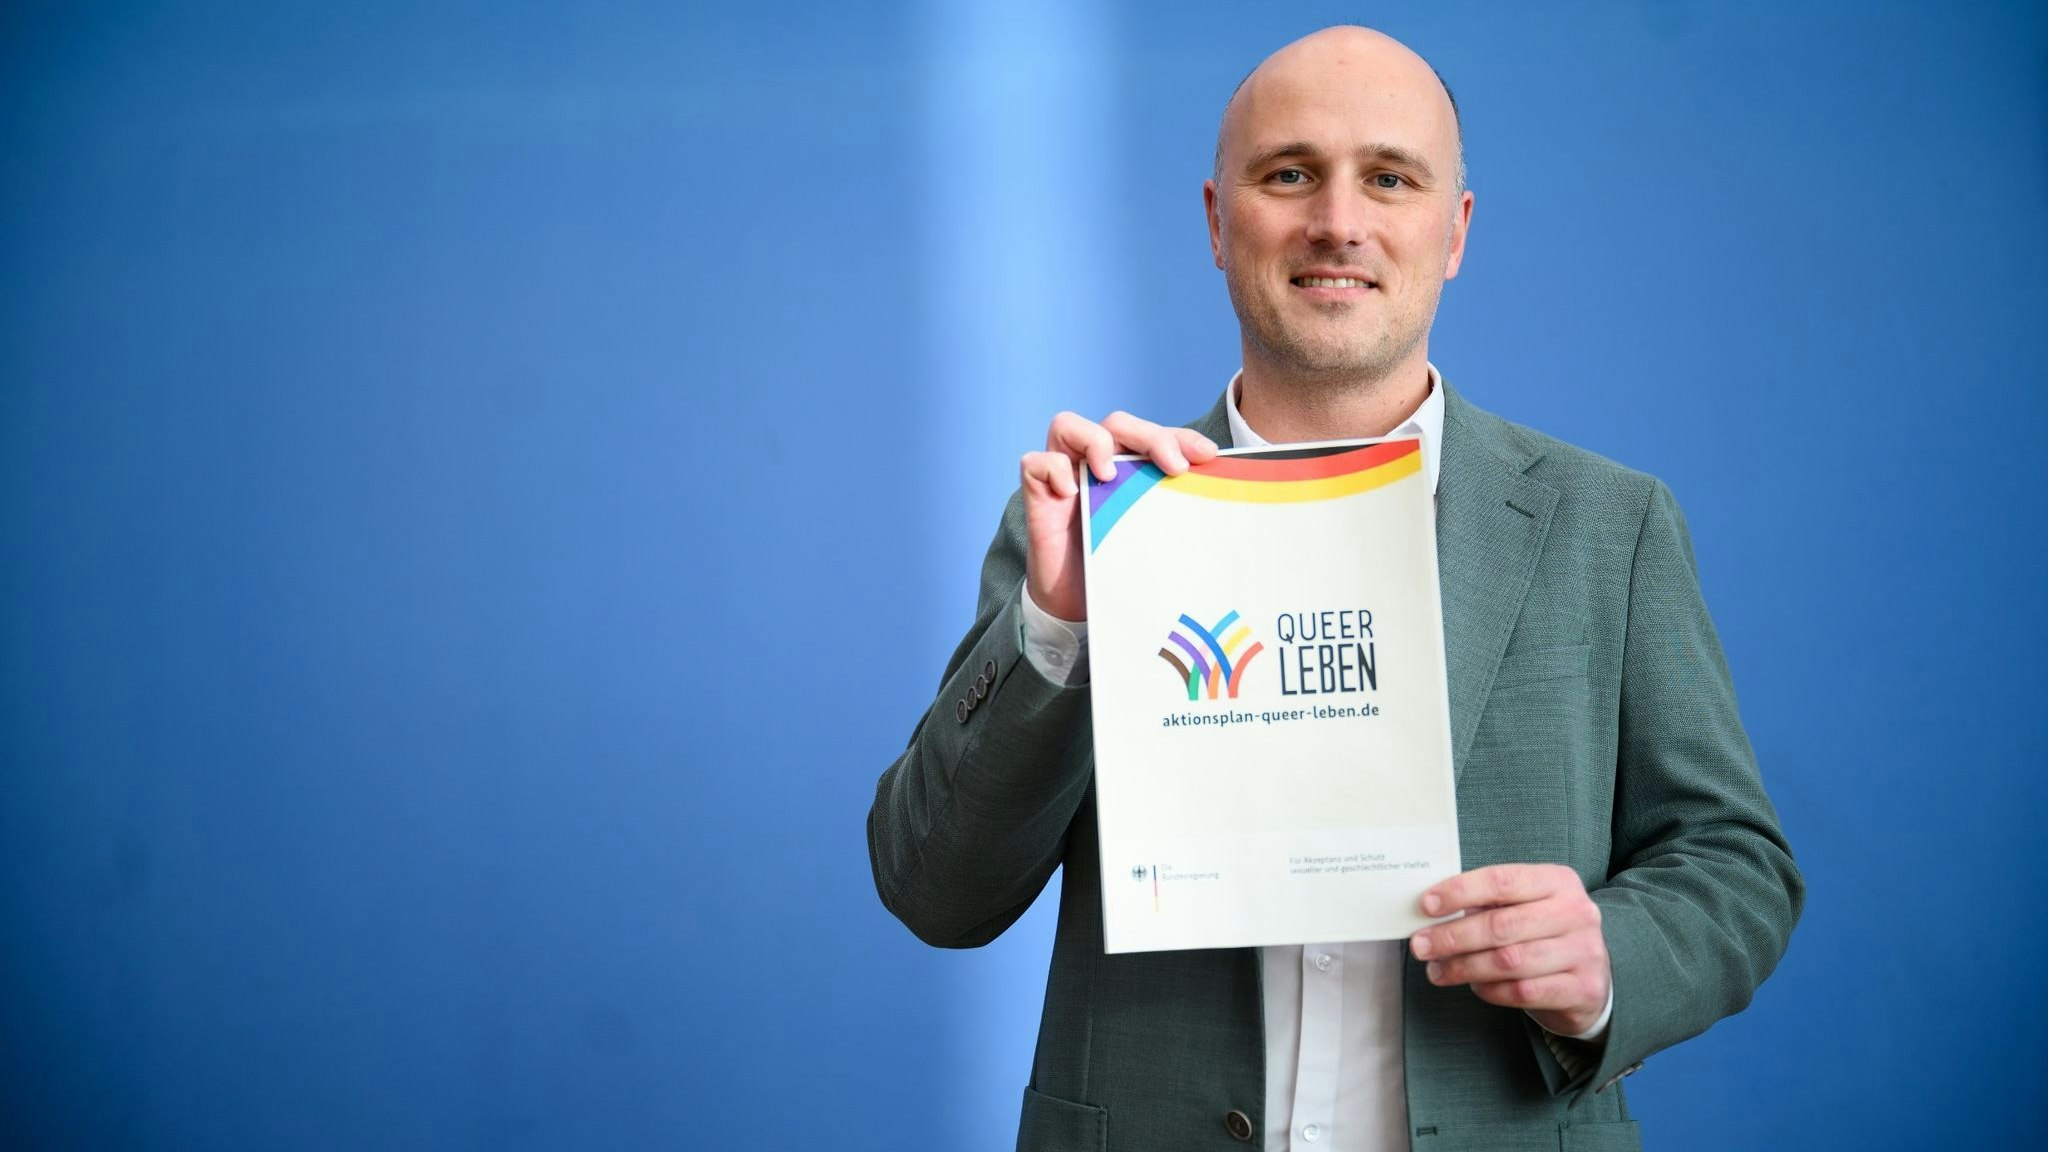 Sven Lehmann (Bündnis 90/Die Grünen) stellt den Aktionsplan der Bundesregierung „Queer leben“ vor. Foto: dpa/von Jutrczenka